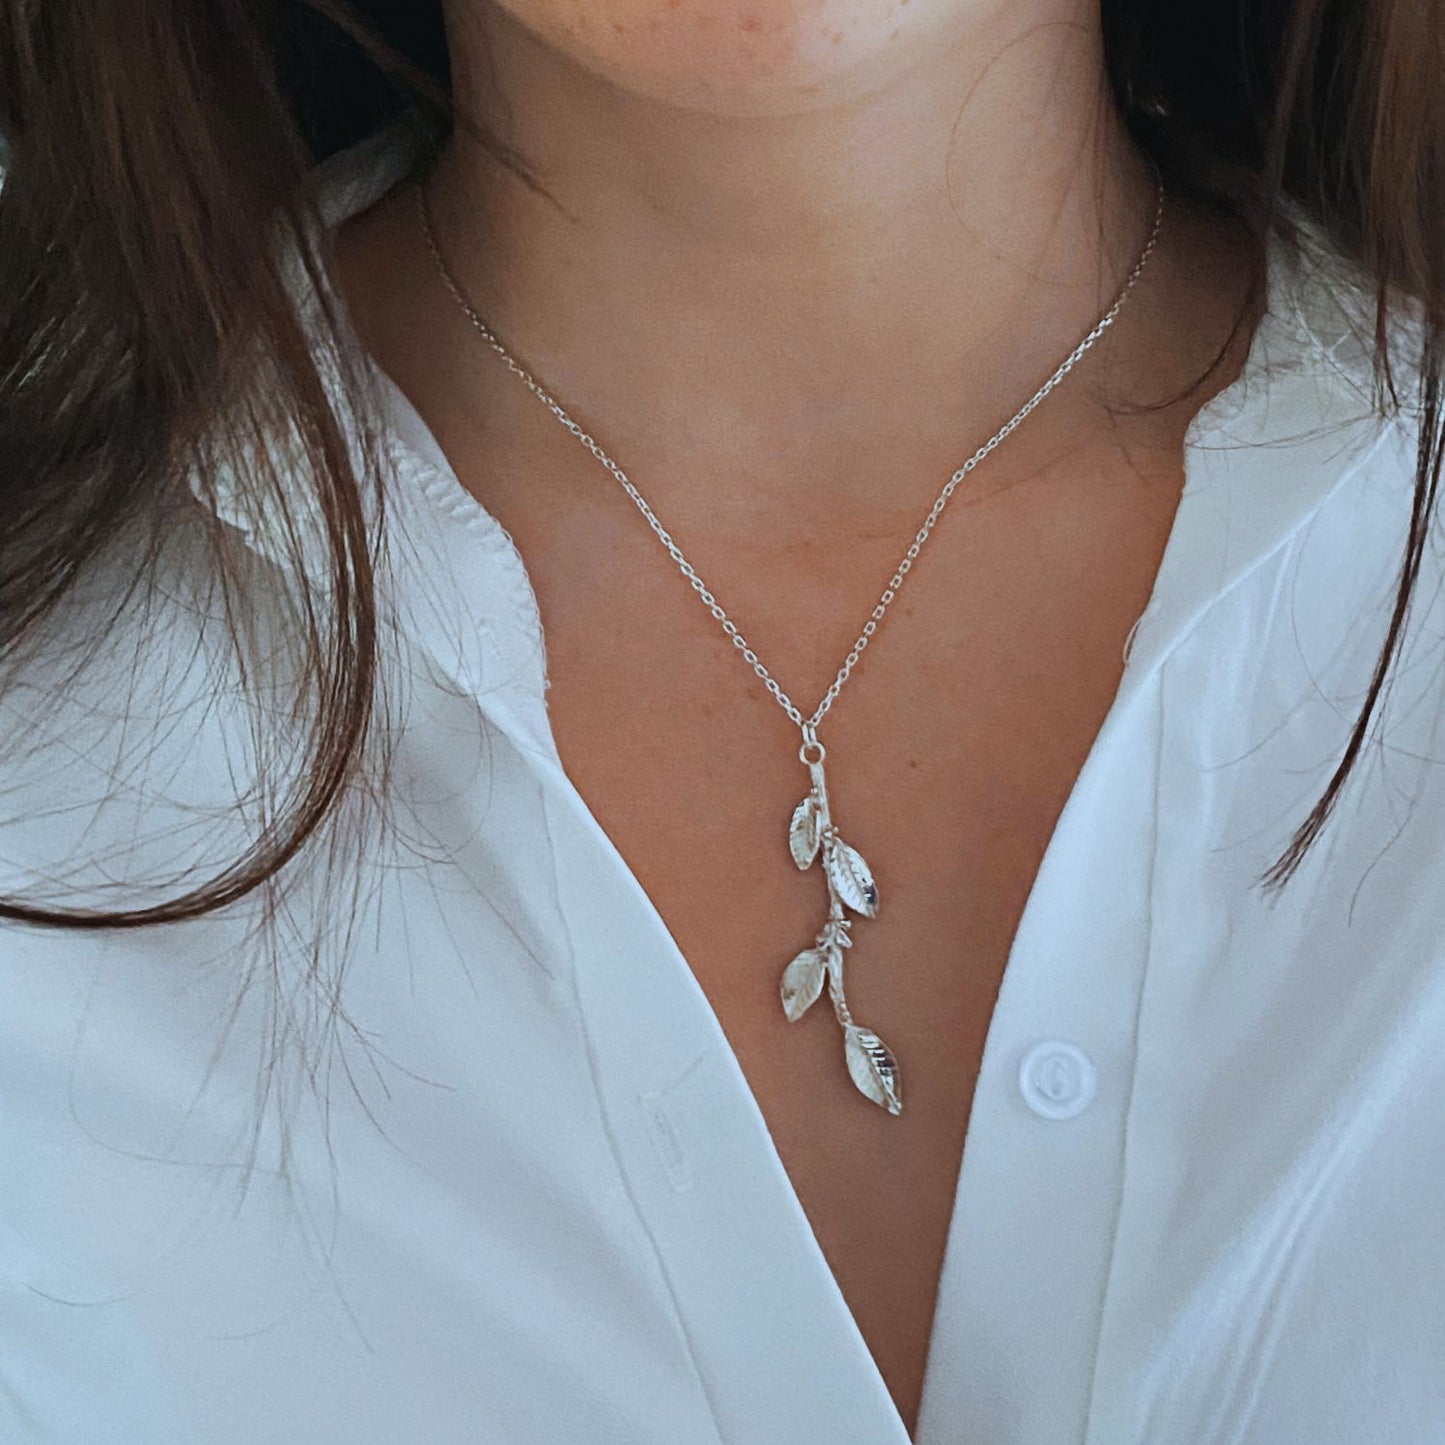 Laurel leaf necklace, Silver Leaf Pendant